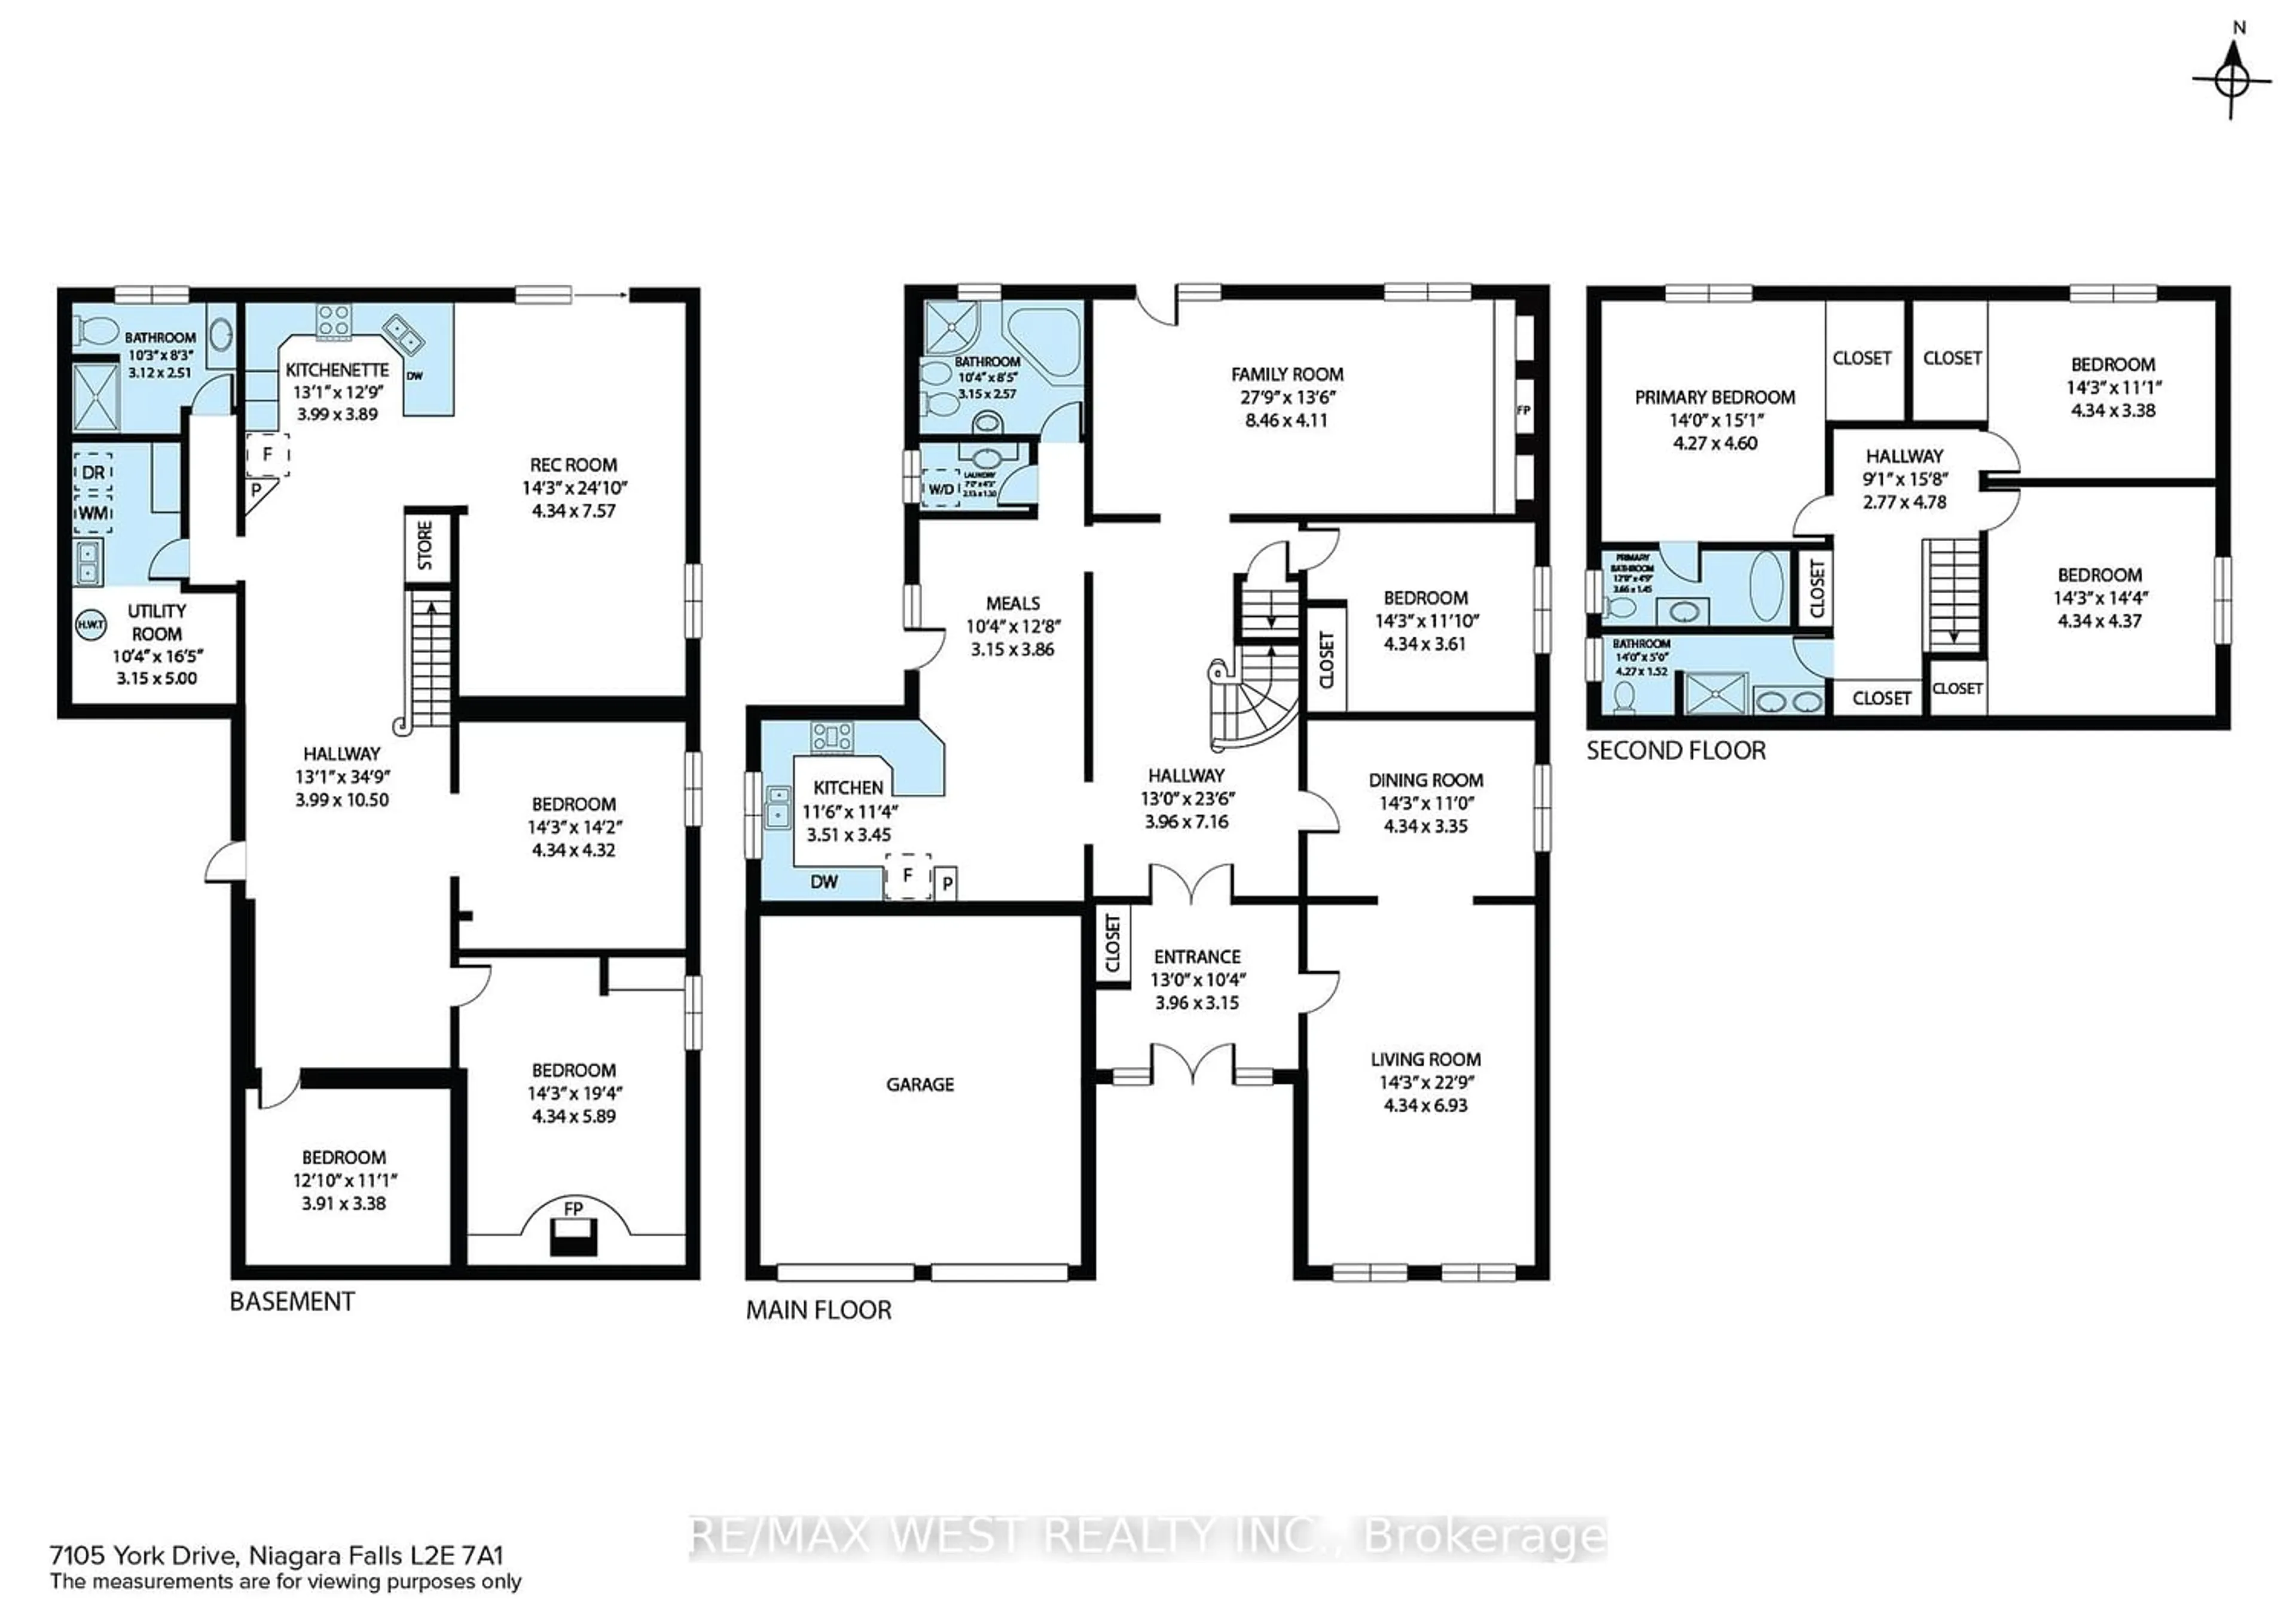 Floor plan for 7105 York Dr, Niagara Falls Ontario L2E 7A1